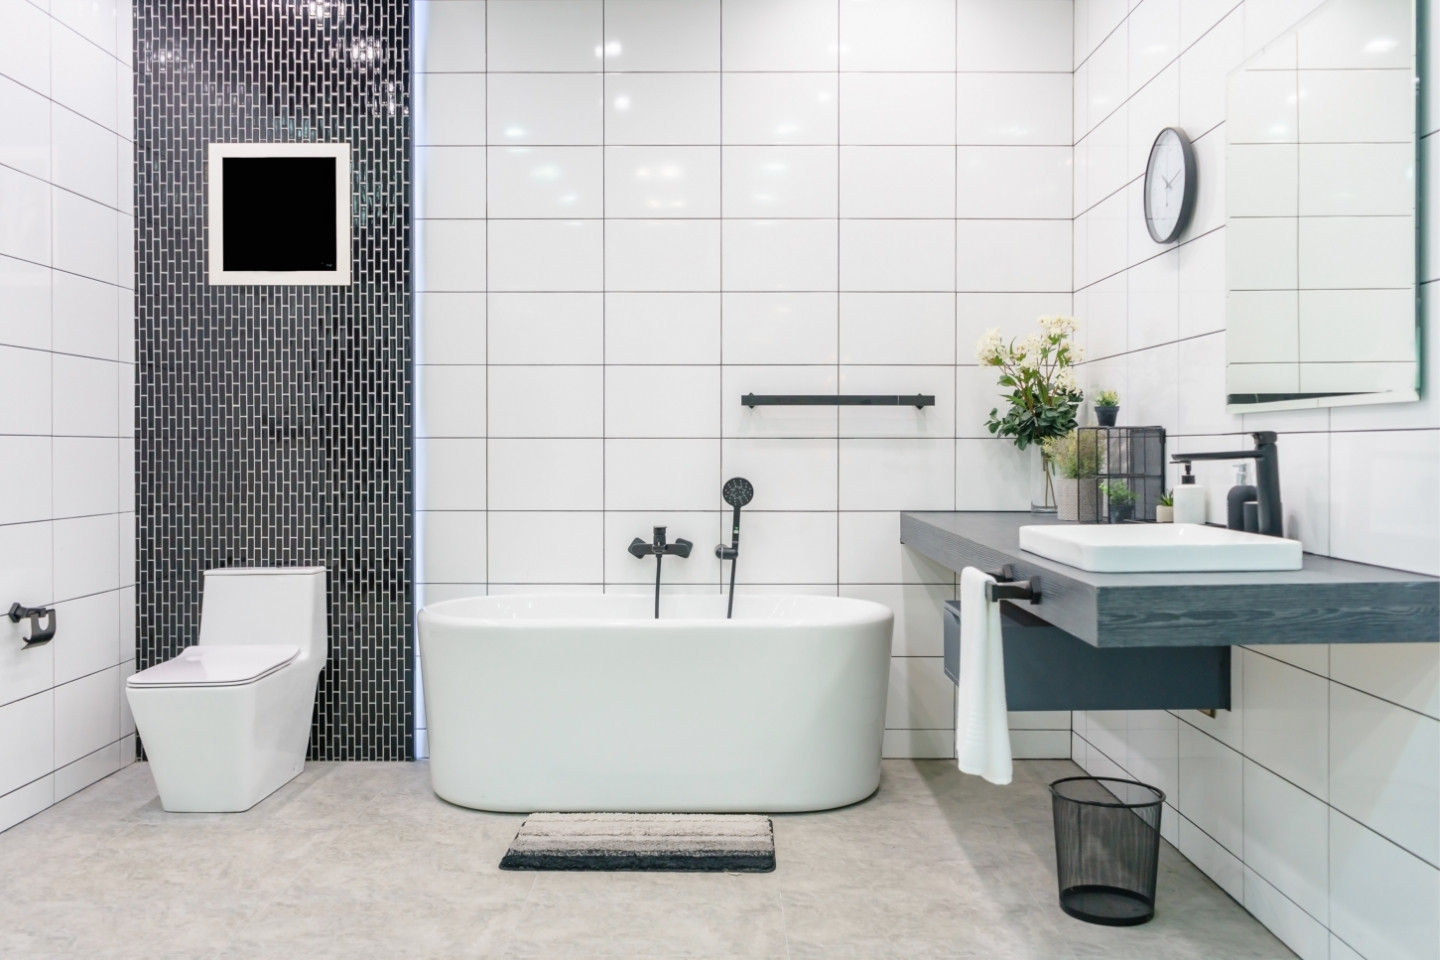 Badezimmer In Weiß – Inspirationen Und Ideen | Obi for Badezimmer Weiße Fliesen Ideen